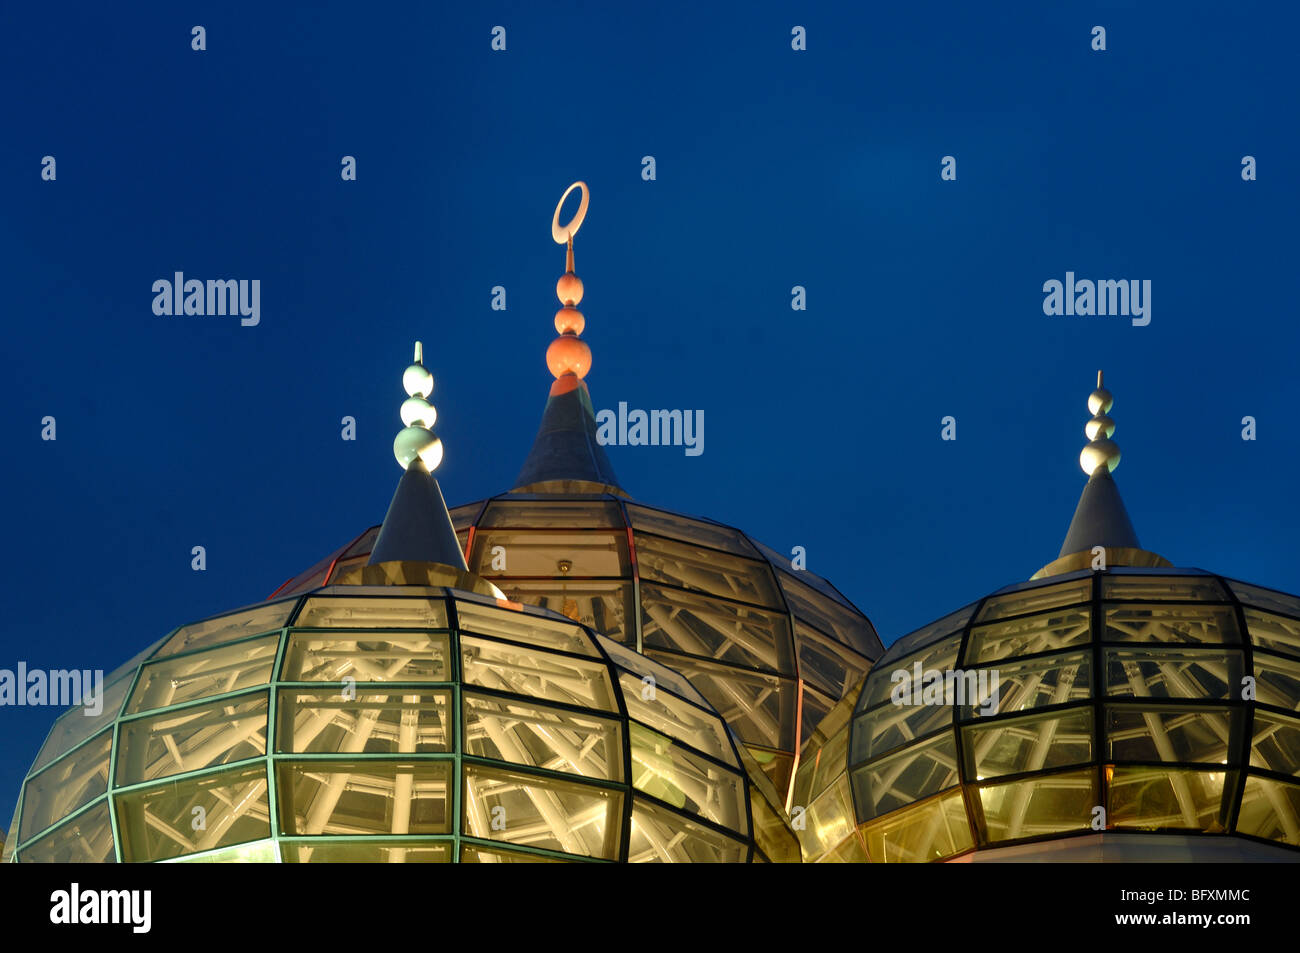 Dômes en verre transparents éclairés de la Mosquée de cristal tout verre, ou Masjid Kristal, la nuit, Kuala Terengganu, Malaisie Banque D'Images